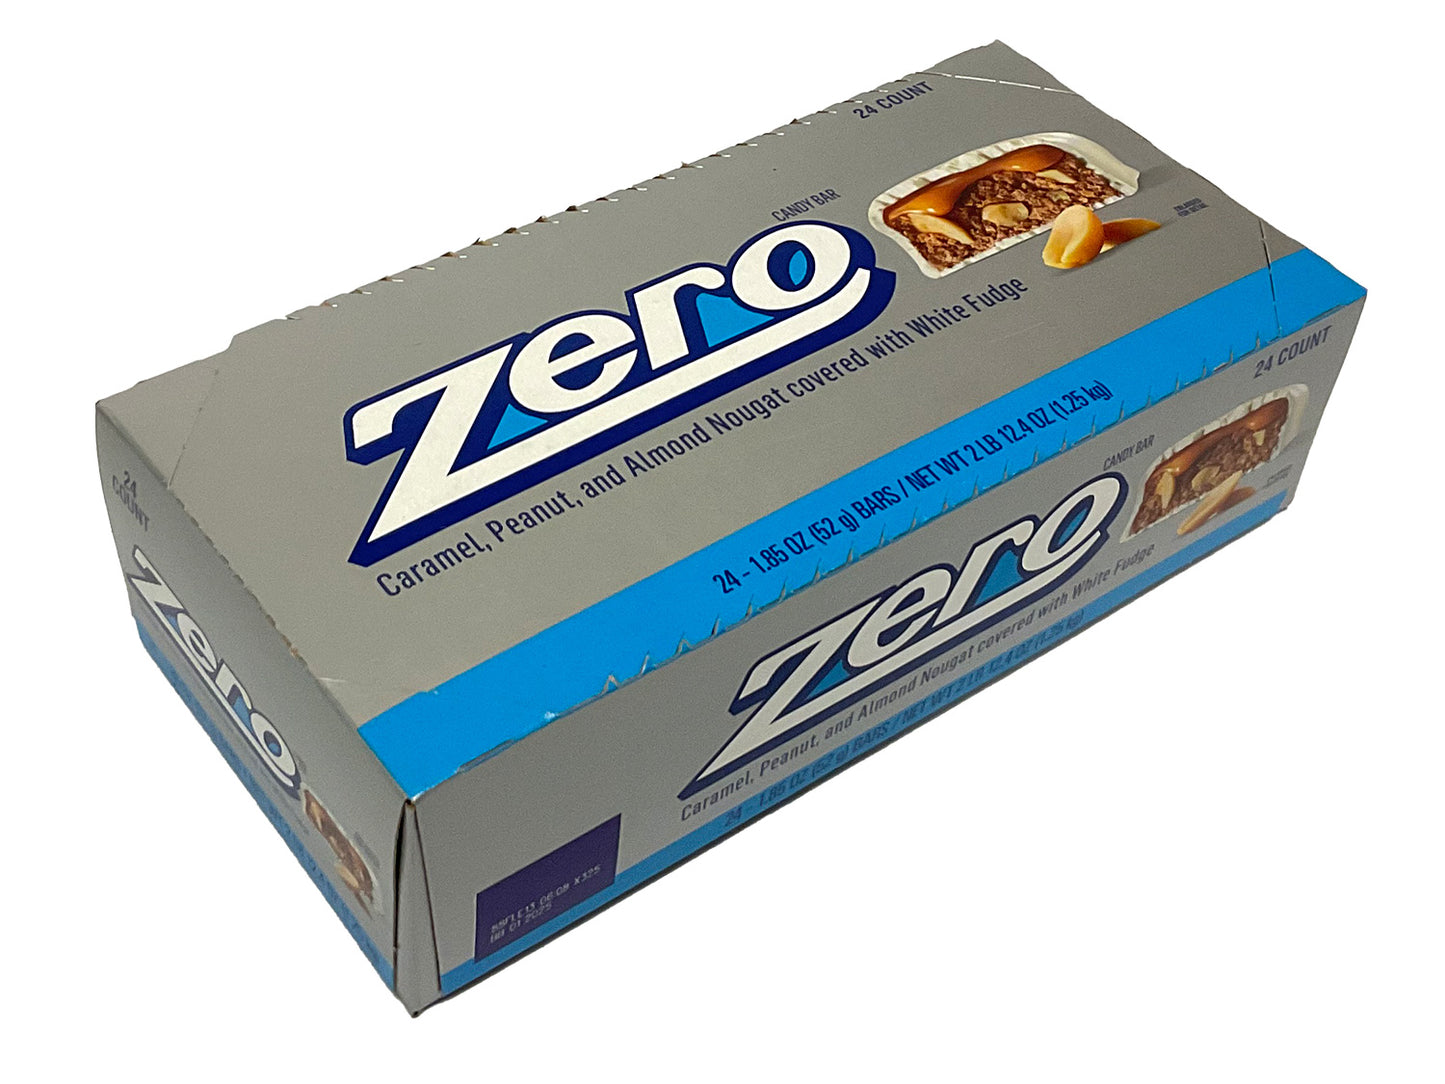 Zero - 1.85 oz bar - box of 24